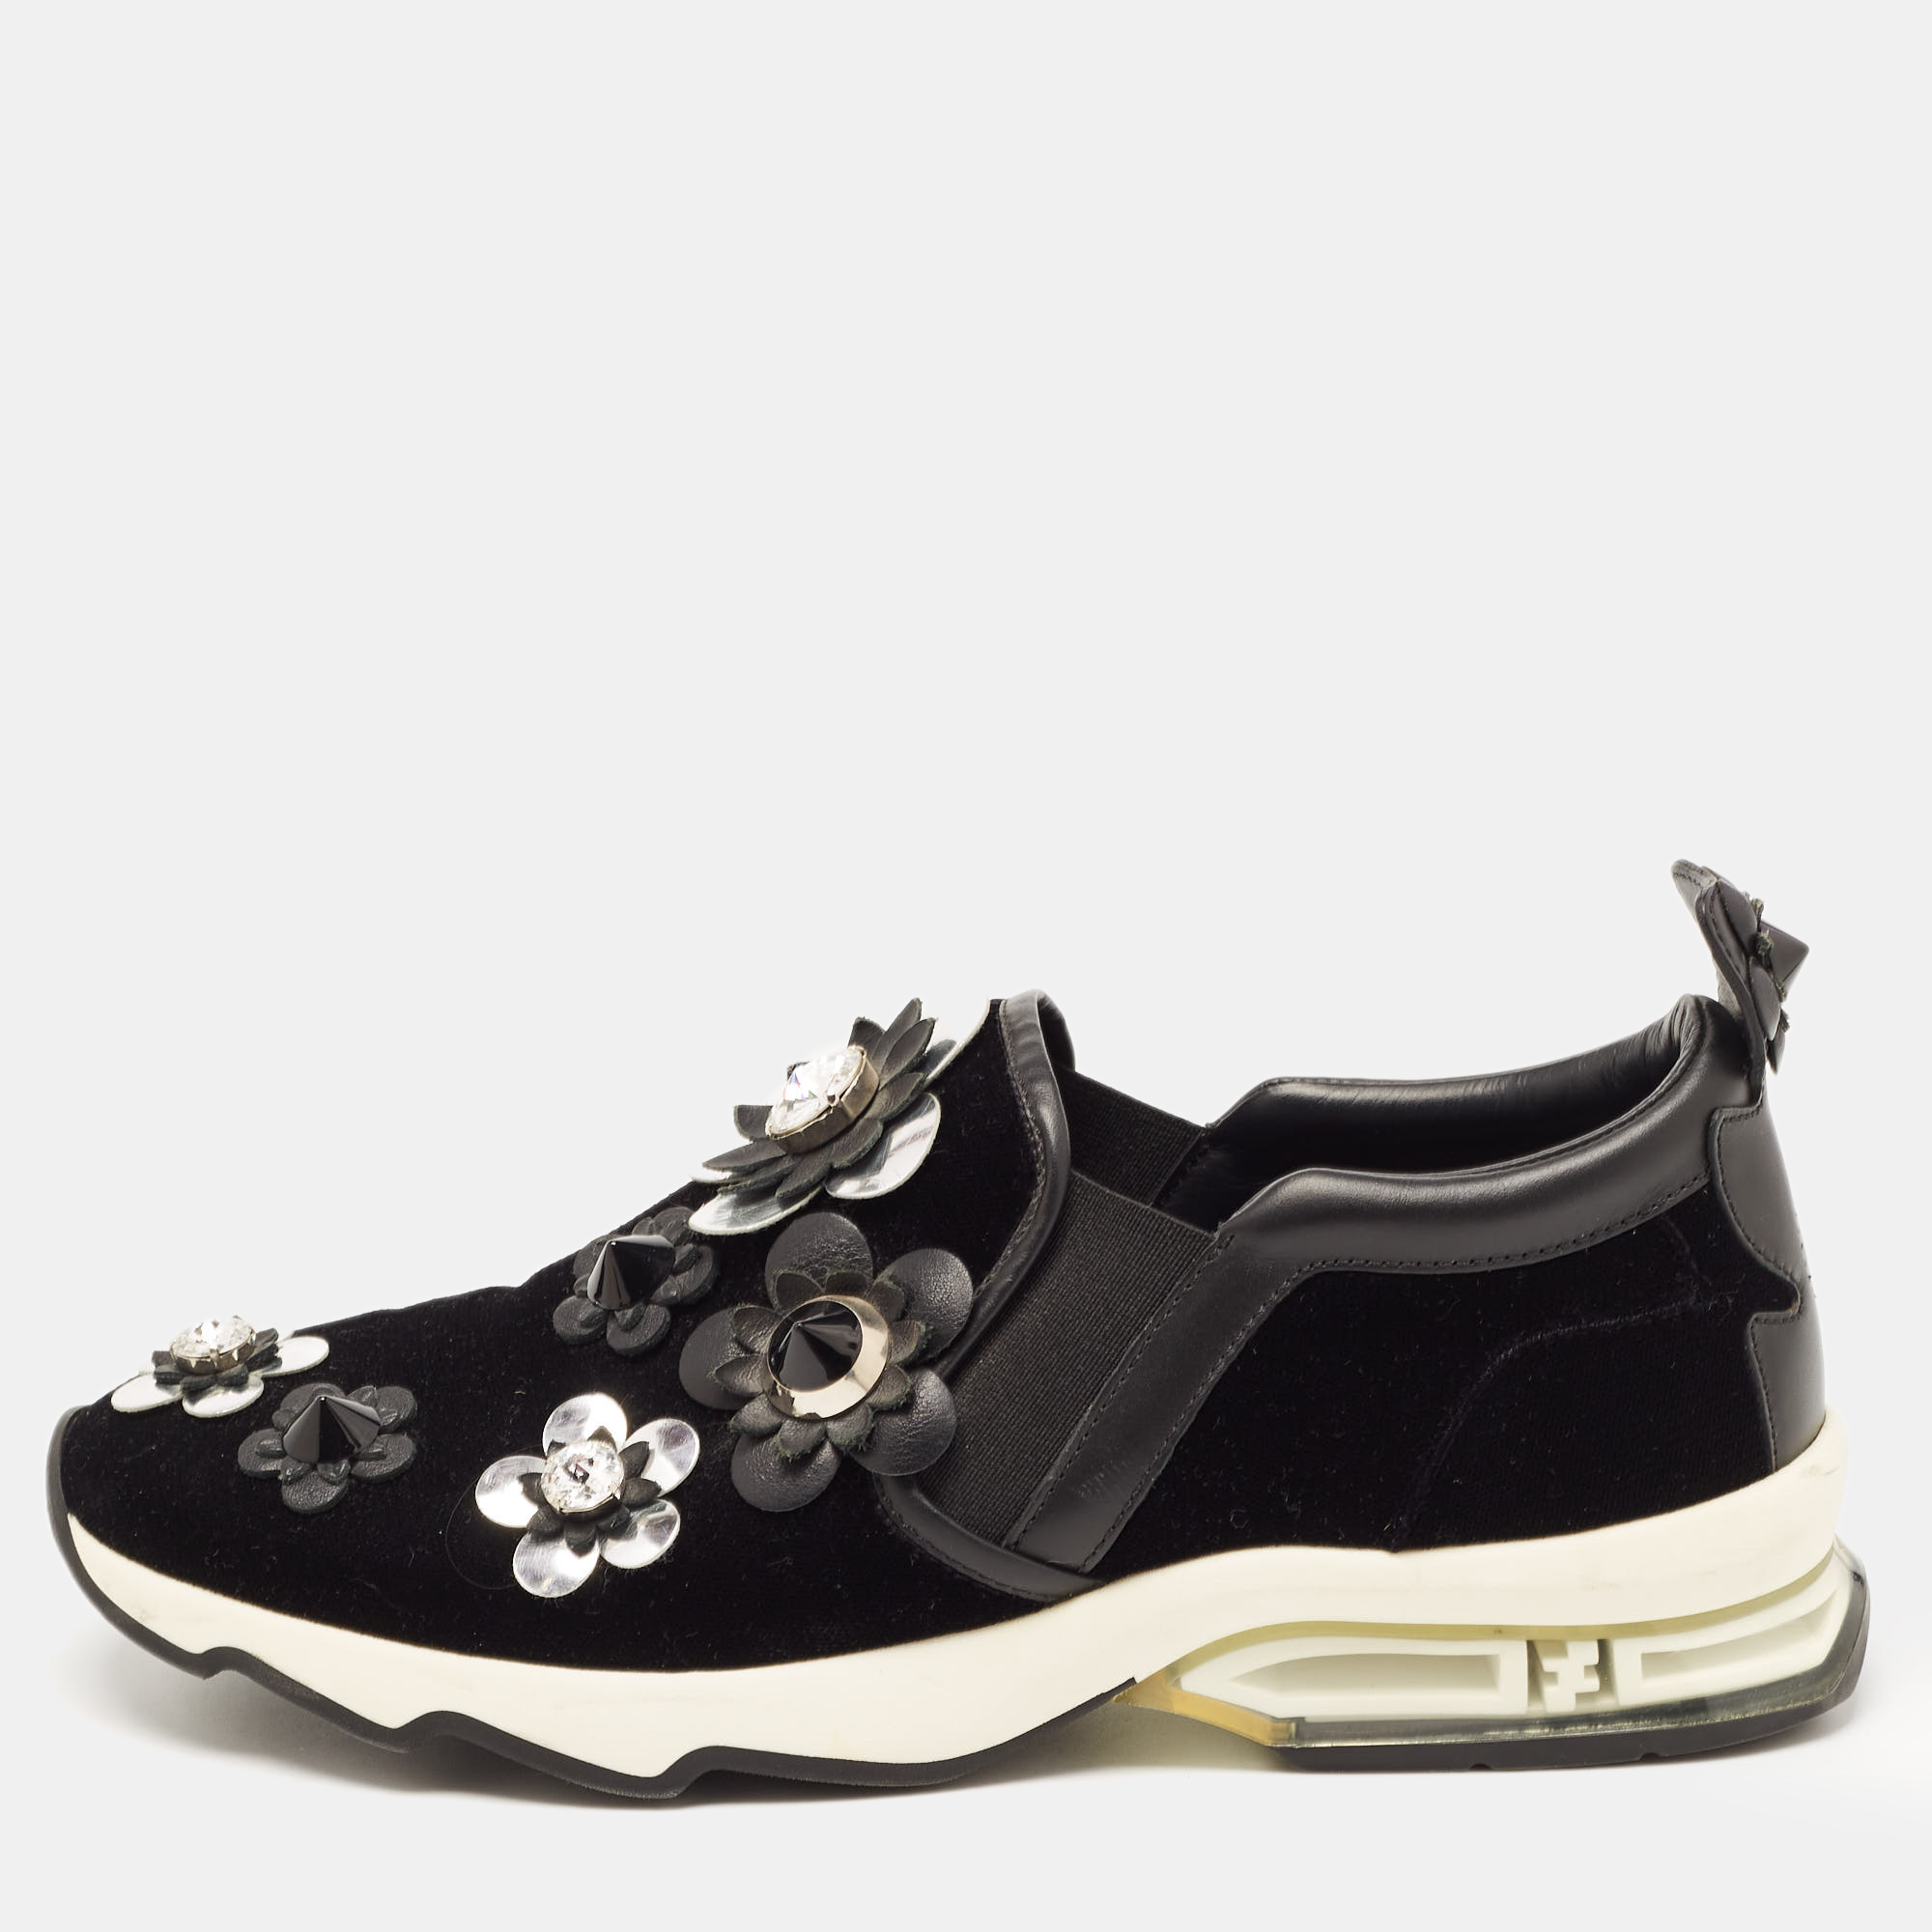 Pre-owned Fendi Black Velvet And Leather Flowerland Slip On Sneakers Size 39